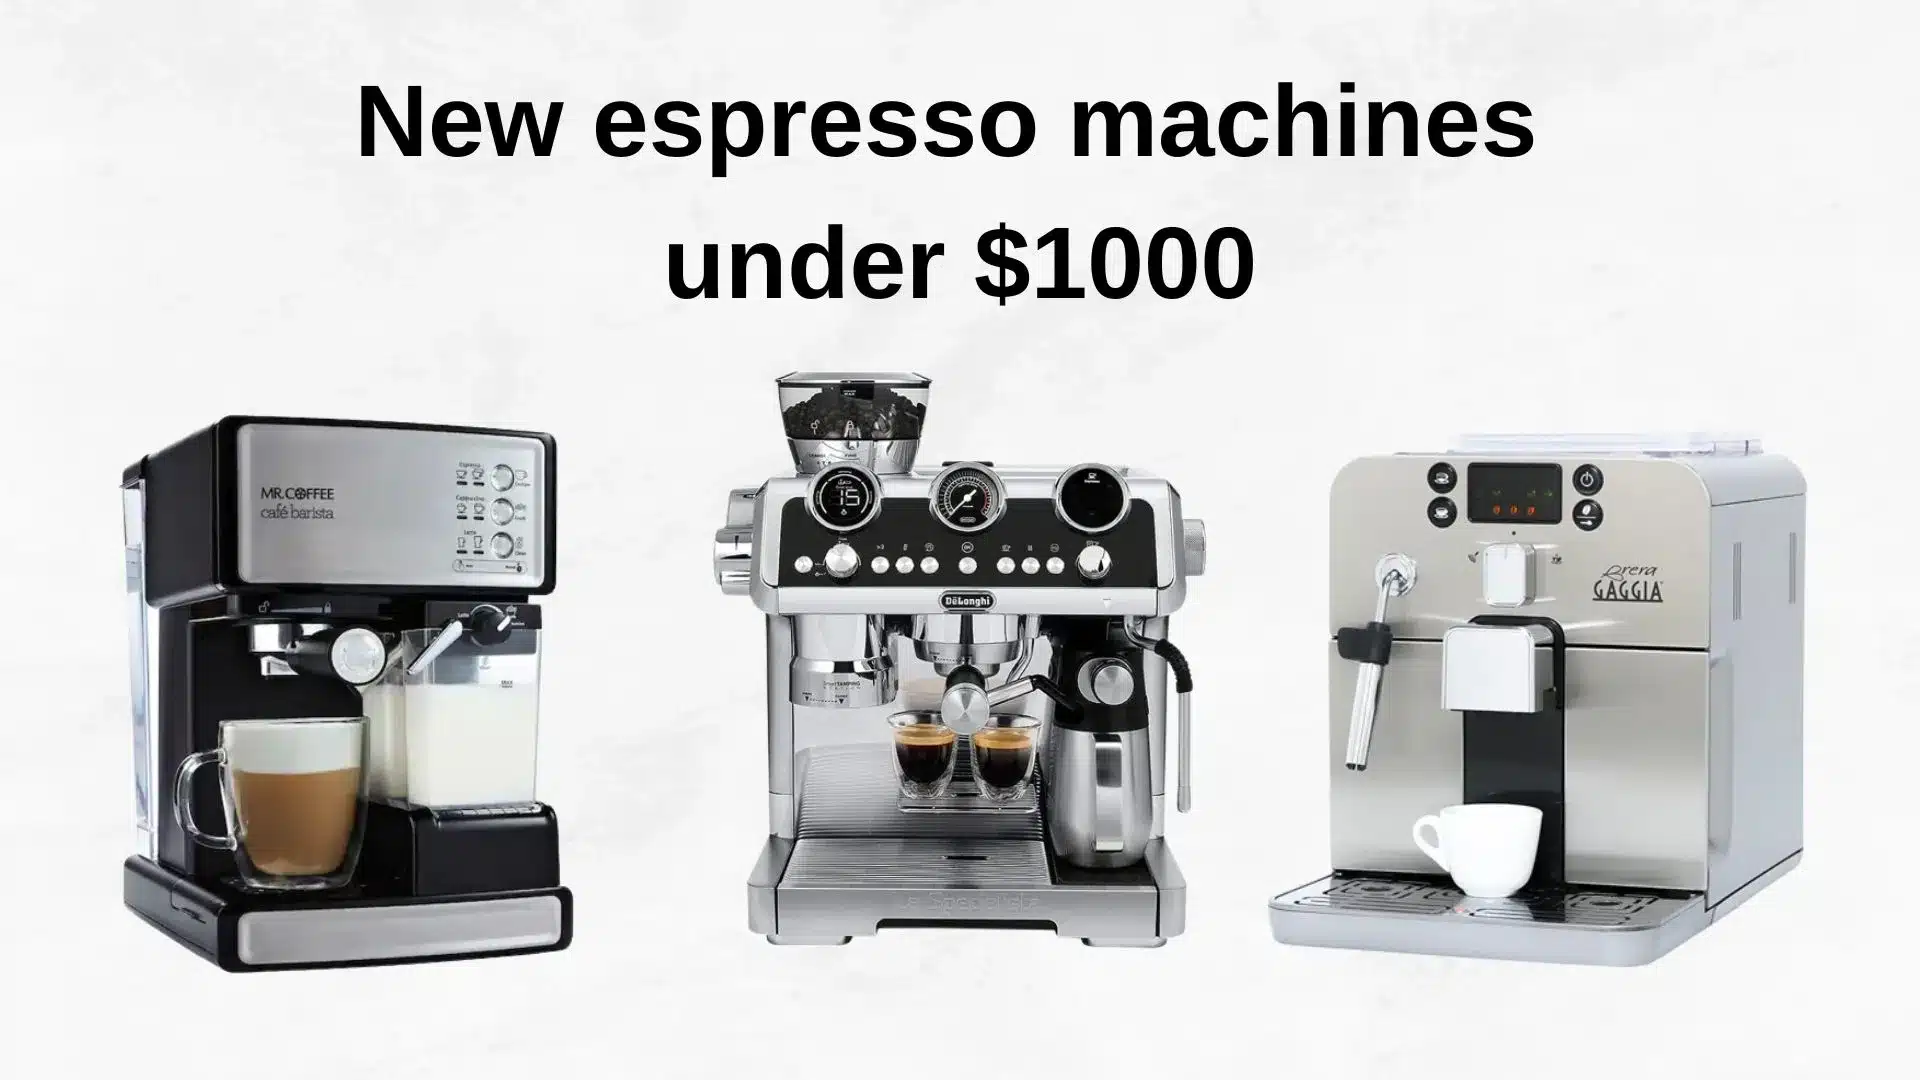 New espresso machines under $1000